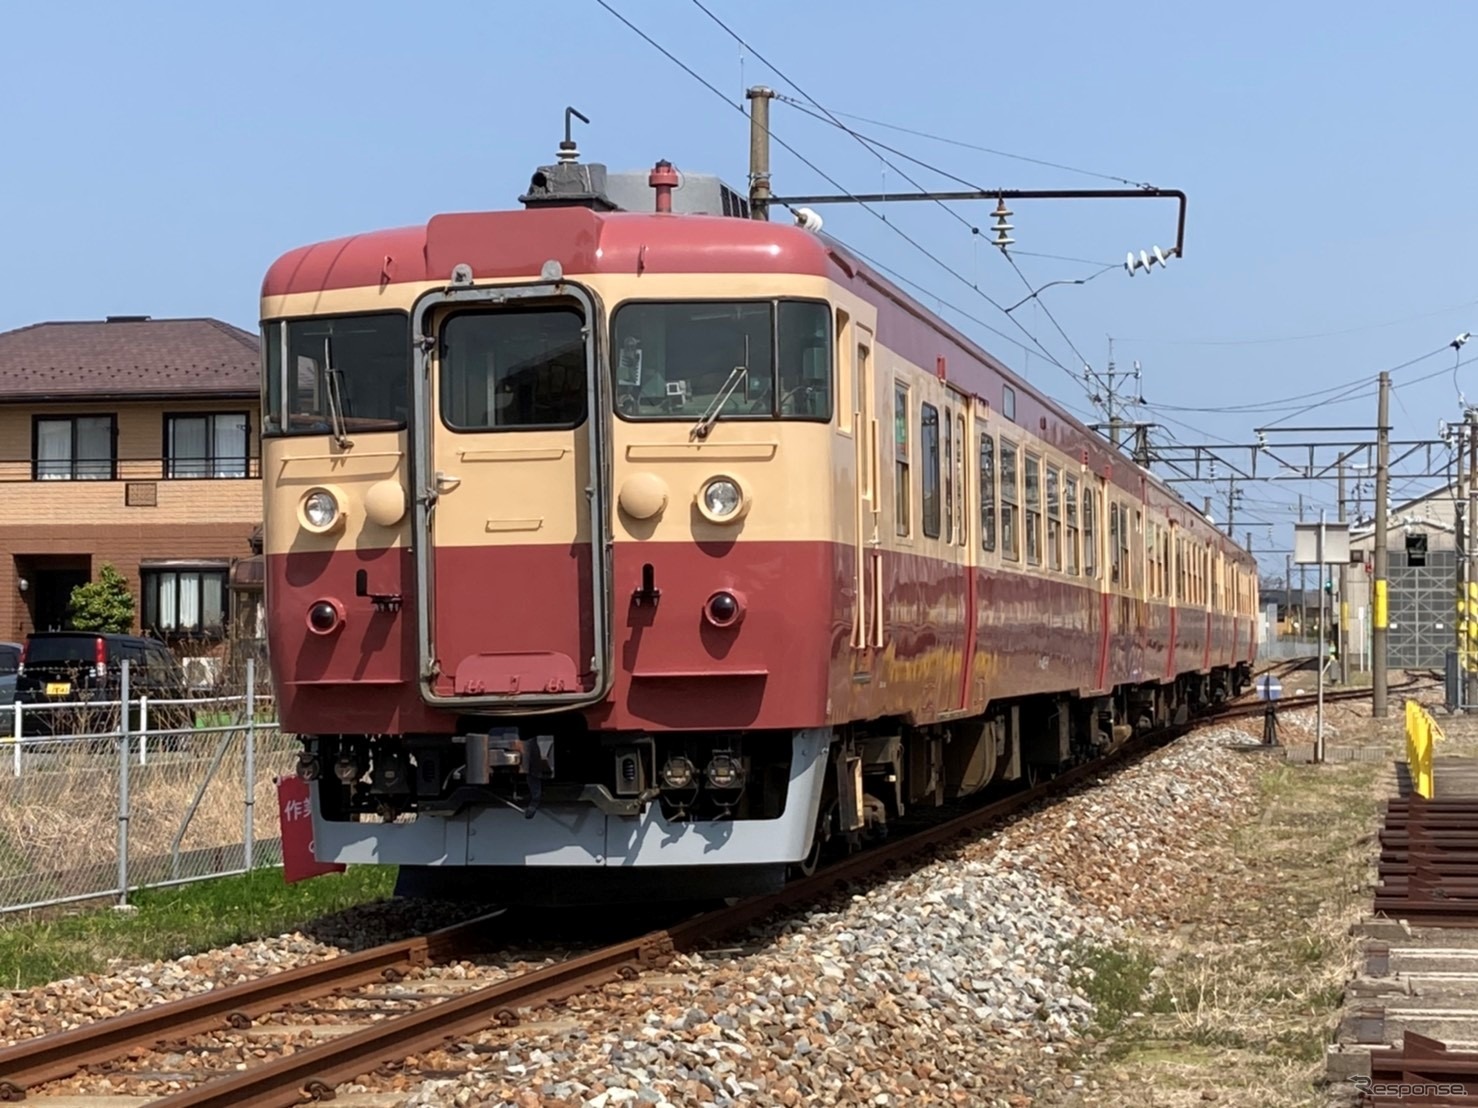 えちごトキめき鉄道がJR西日本から購入した413・455系電車。元は急行型交直両用電車455・475系だったため、このような国鉄急行色に塗り替えられた。